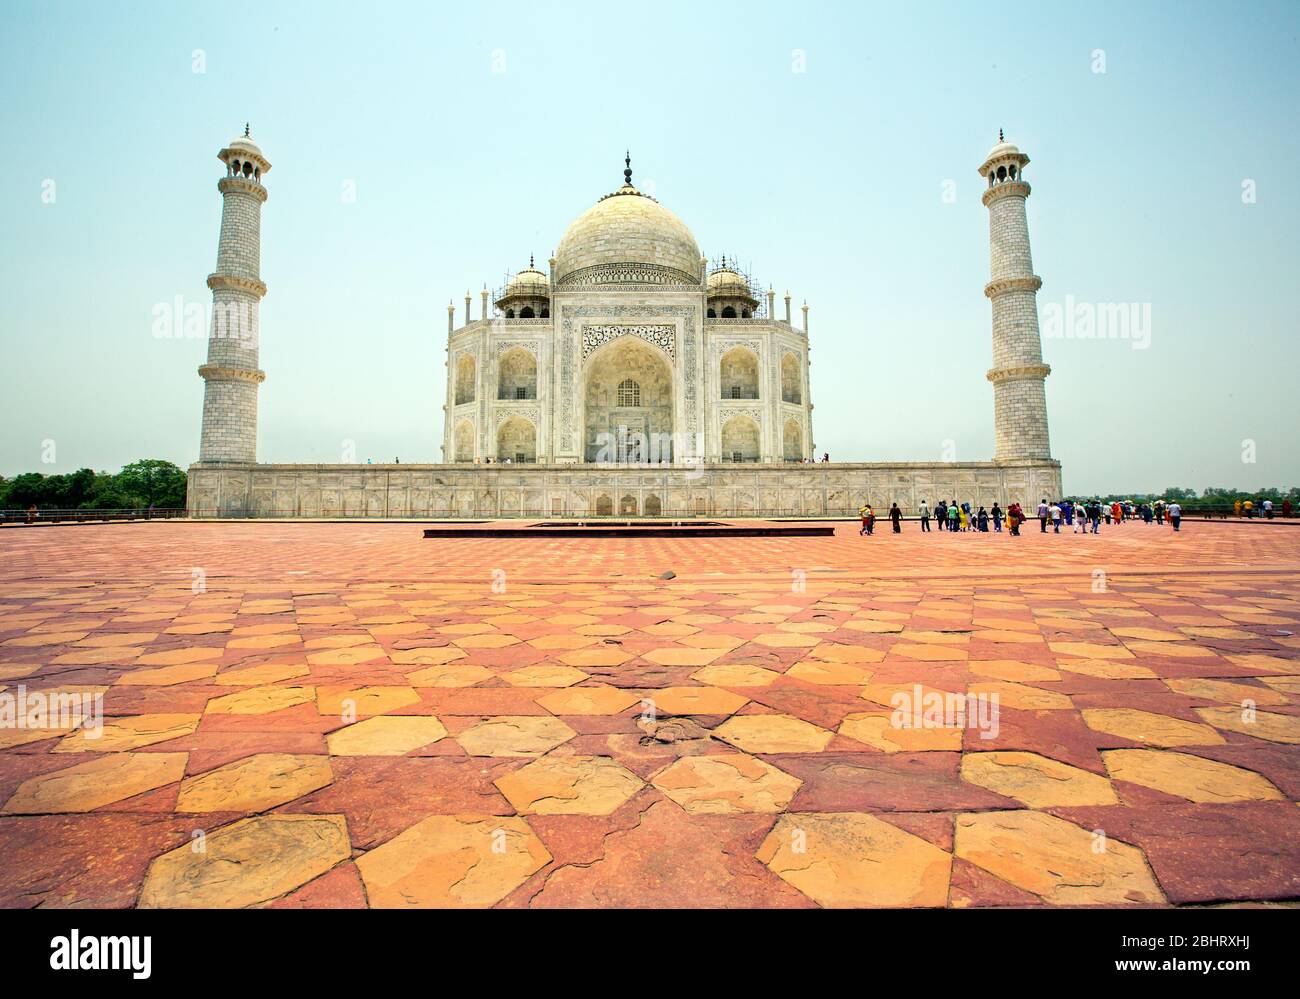 Eines der sieben 7 Weltwunder, schöne taj mahal.mahal taj, shahjahan, mumtaz, Denkmal in indien, agra, delhi, Denkmal der Liebe, romantische Denkmäler Stockfoto